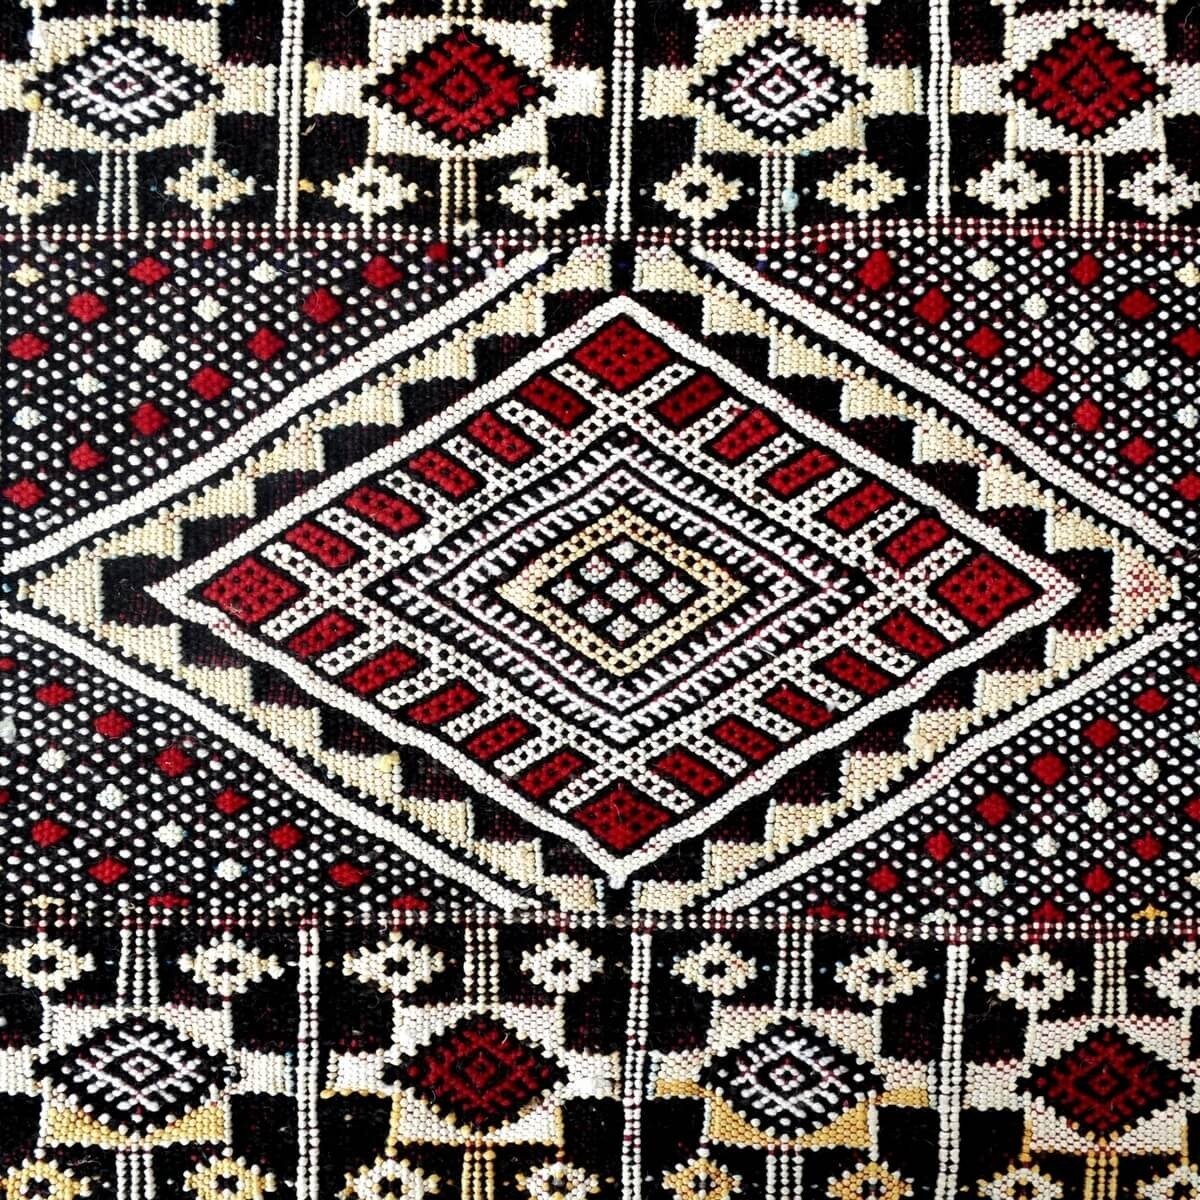 Tapete berbere Grande Tapete Hanbel Taza 170x235 Azul/Vermelho (Tecidos à mão, Marrocos) Tapete marroquino artesanal feito de lã